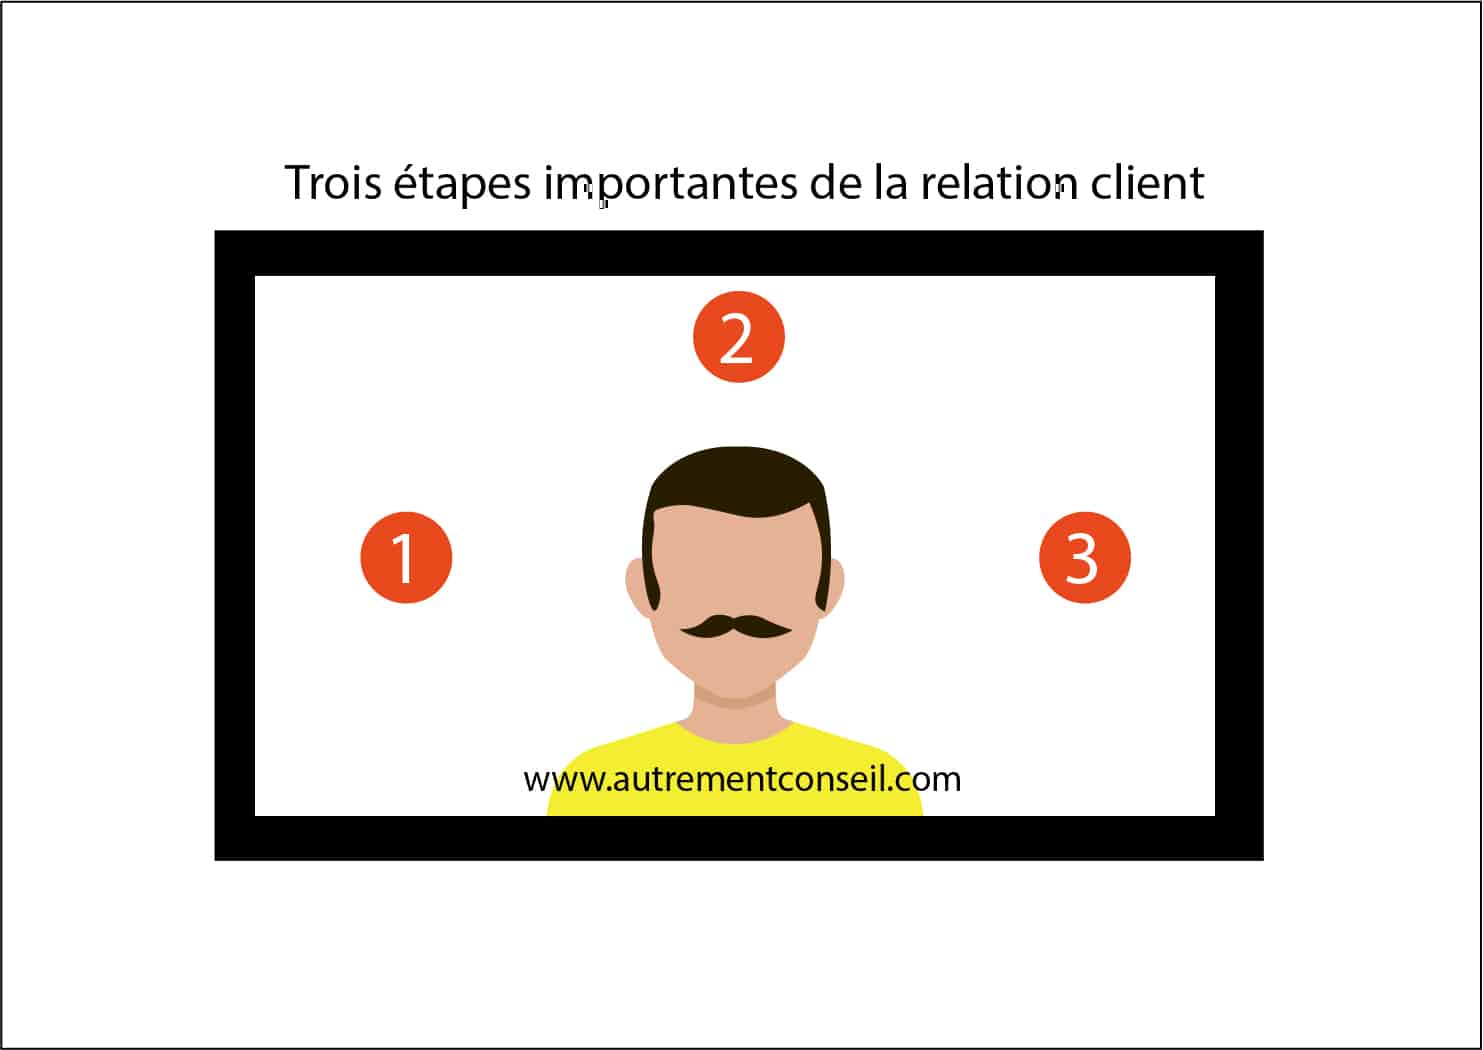 Trois etapes importantes de la relation client